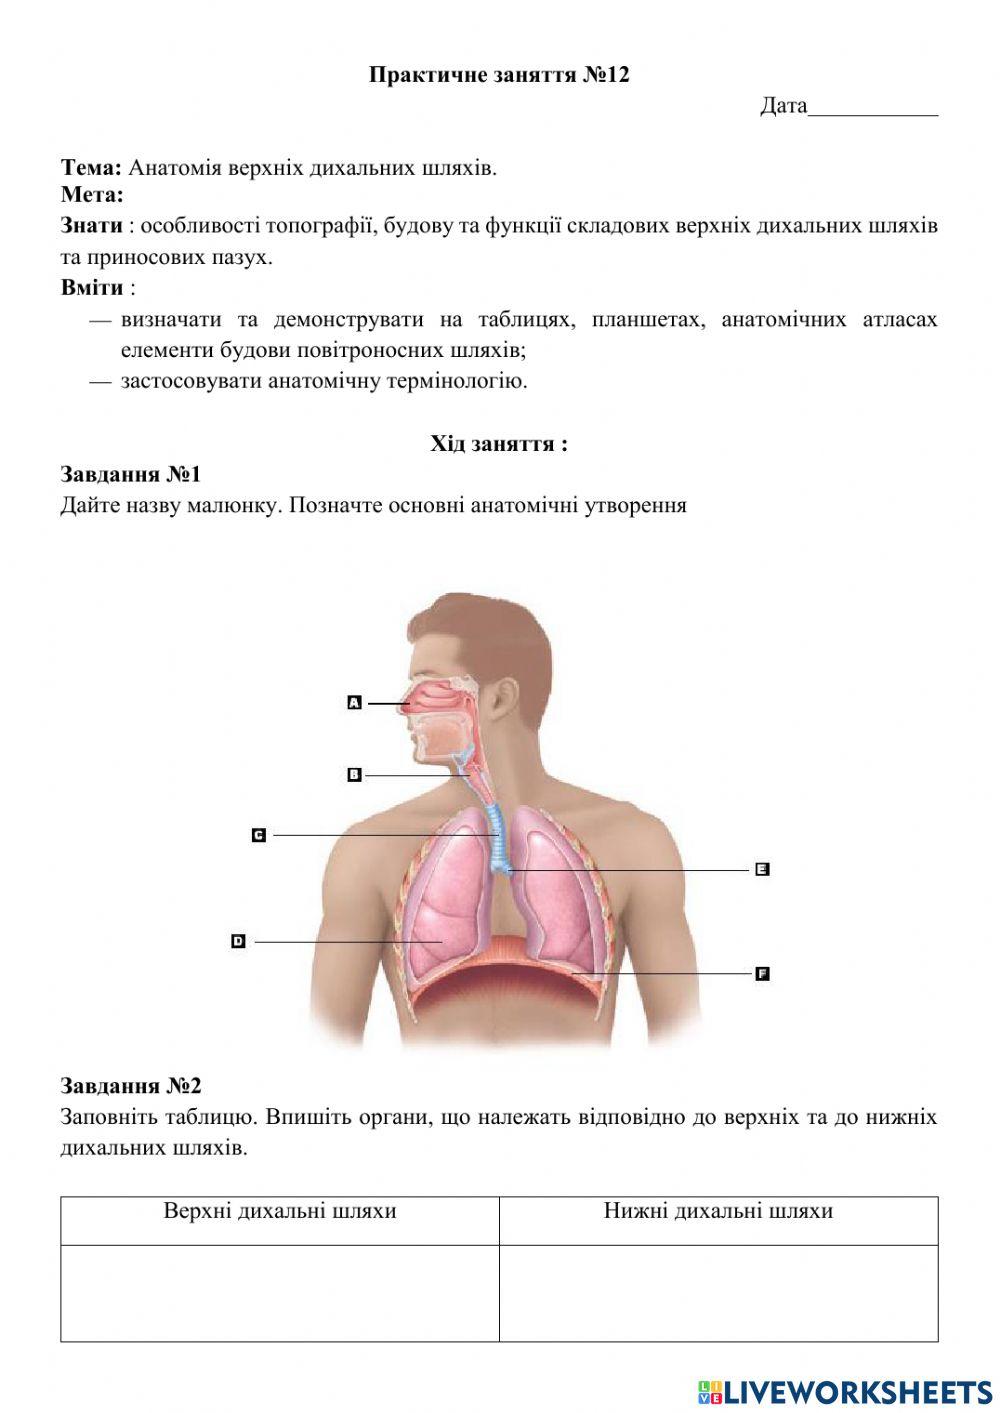 Анатомія верхніх дихальних шляхів